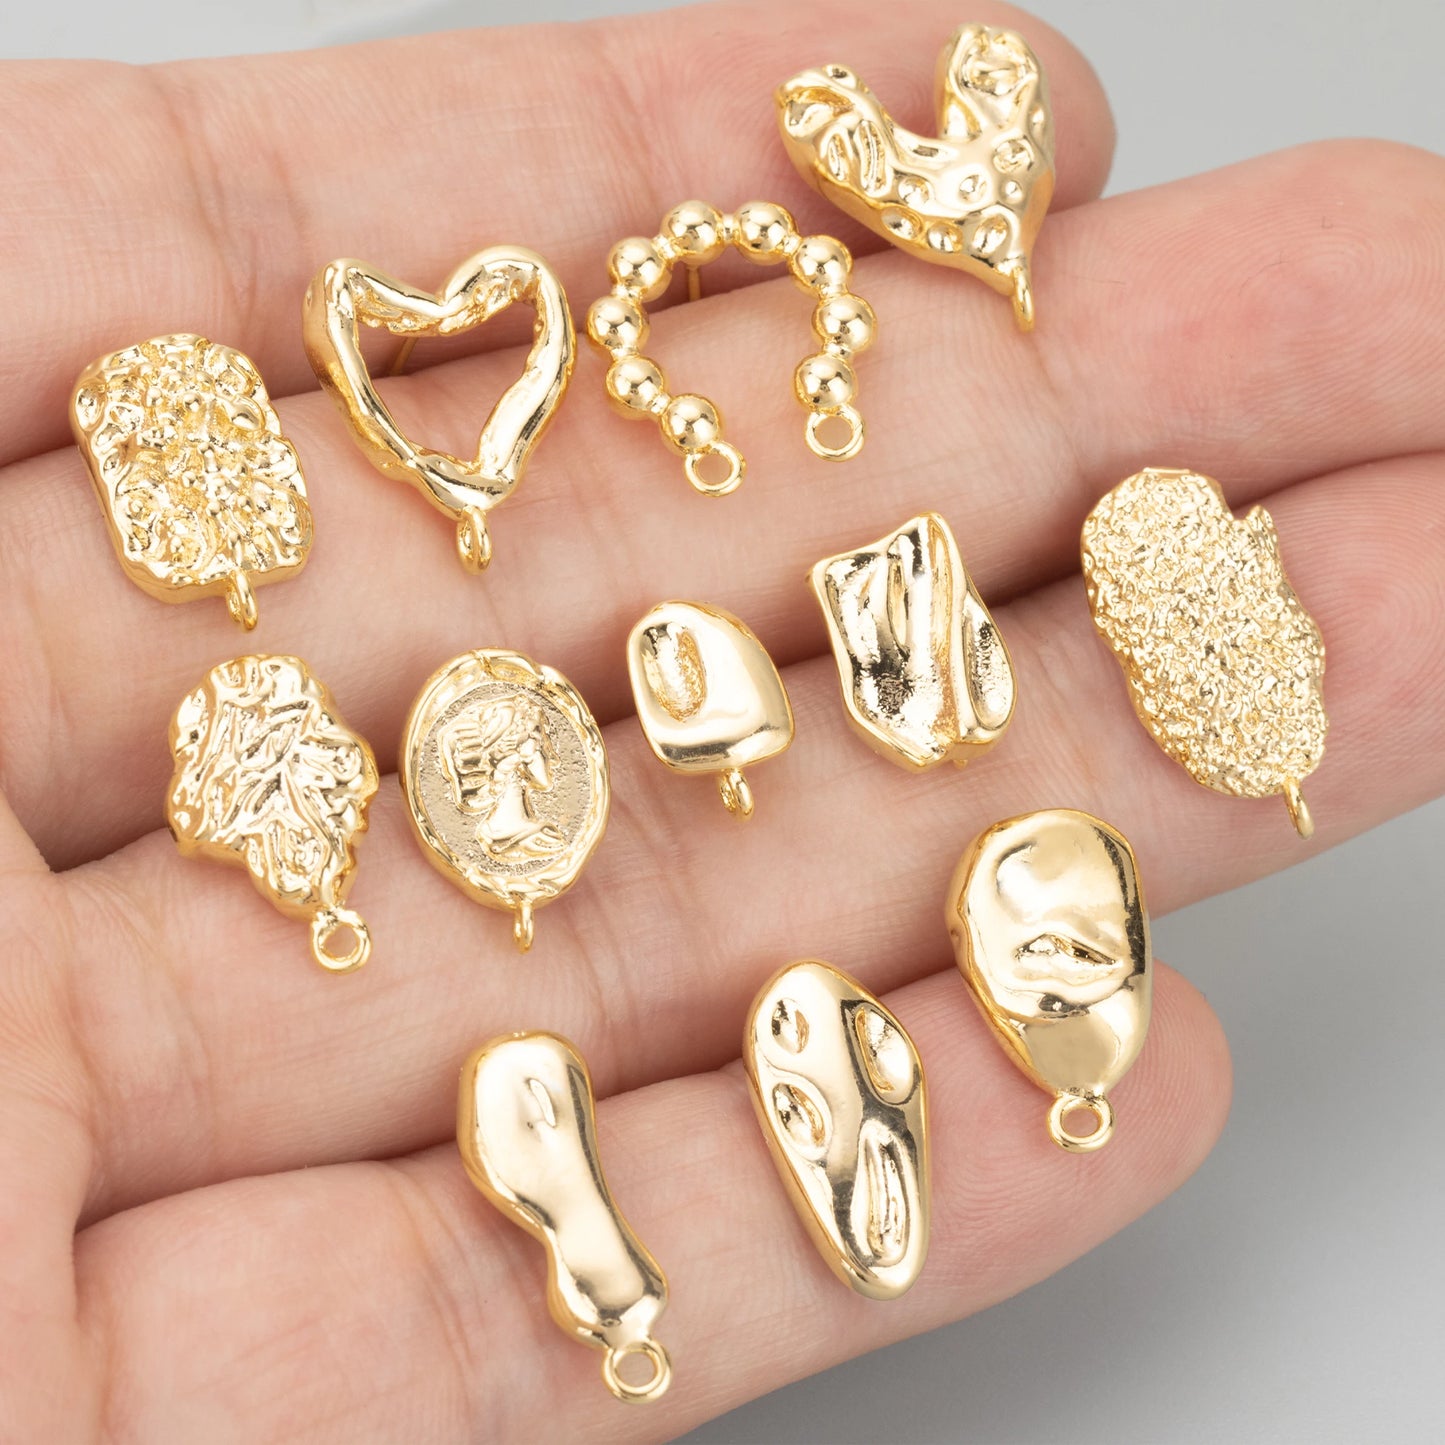 GUFEATHER MD33, accessoires de bijoux, plaqué rhodium or 18 carats, cuivre, fait à la main, breloques, boucles d'oreilles à faire soi-même, fabrication de bijoux, 6 pièces/lot 